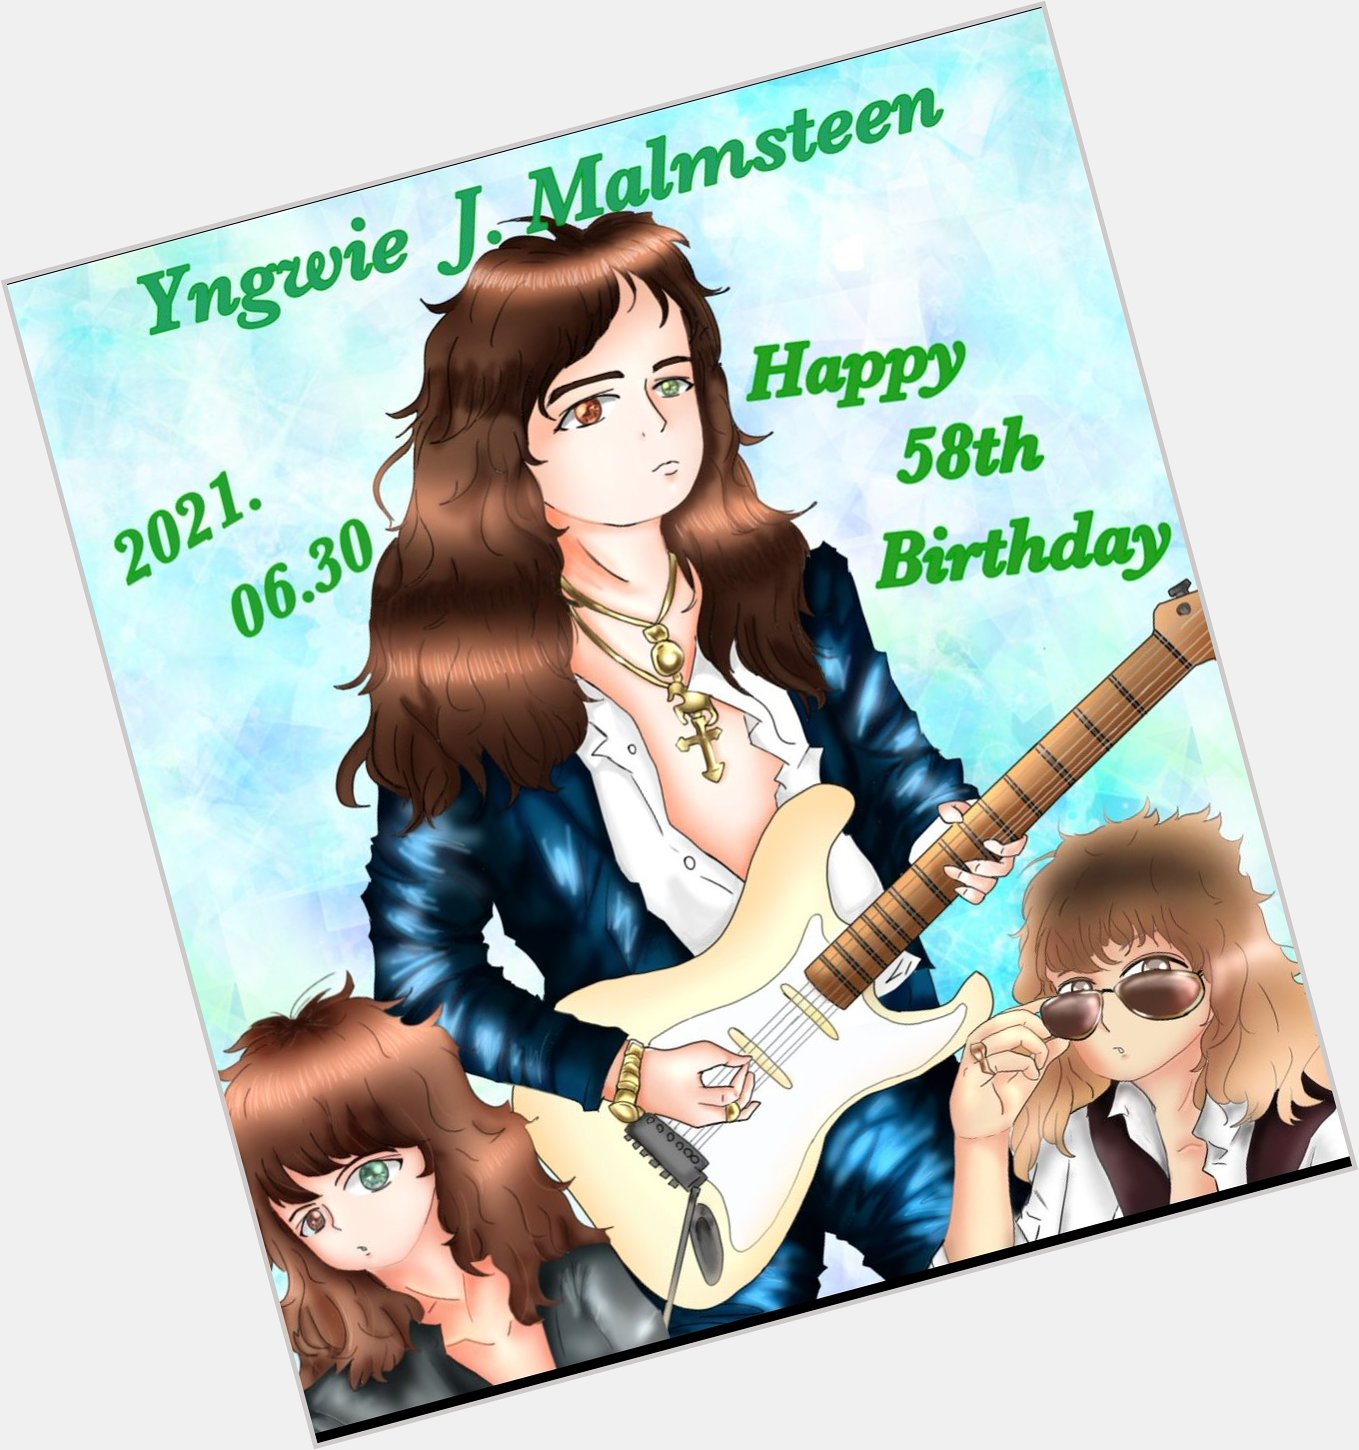  Happy birthday
Yngwie Malmsteen!!    